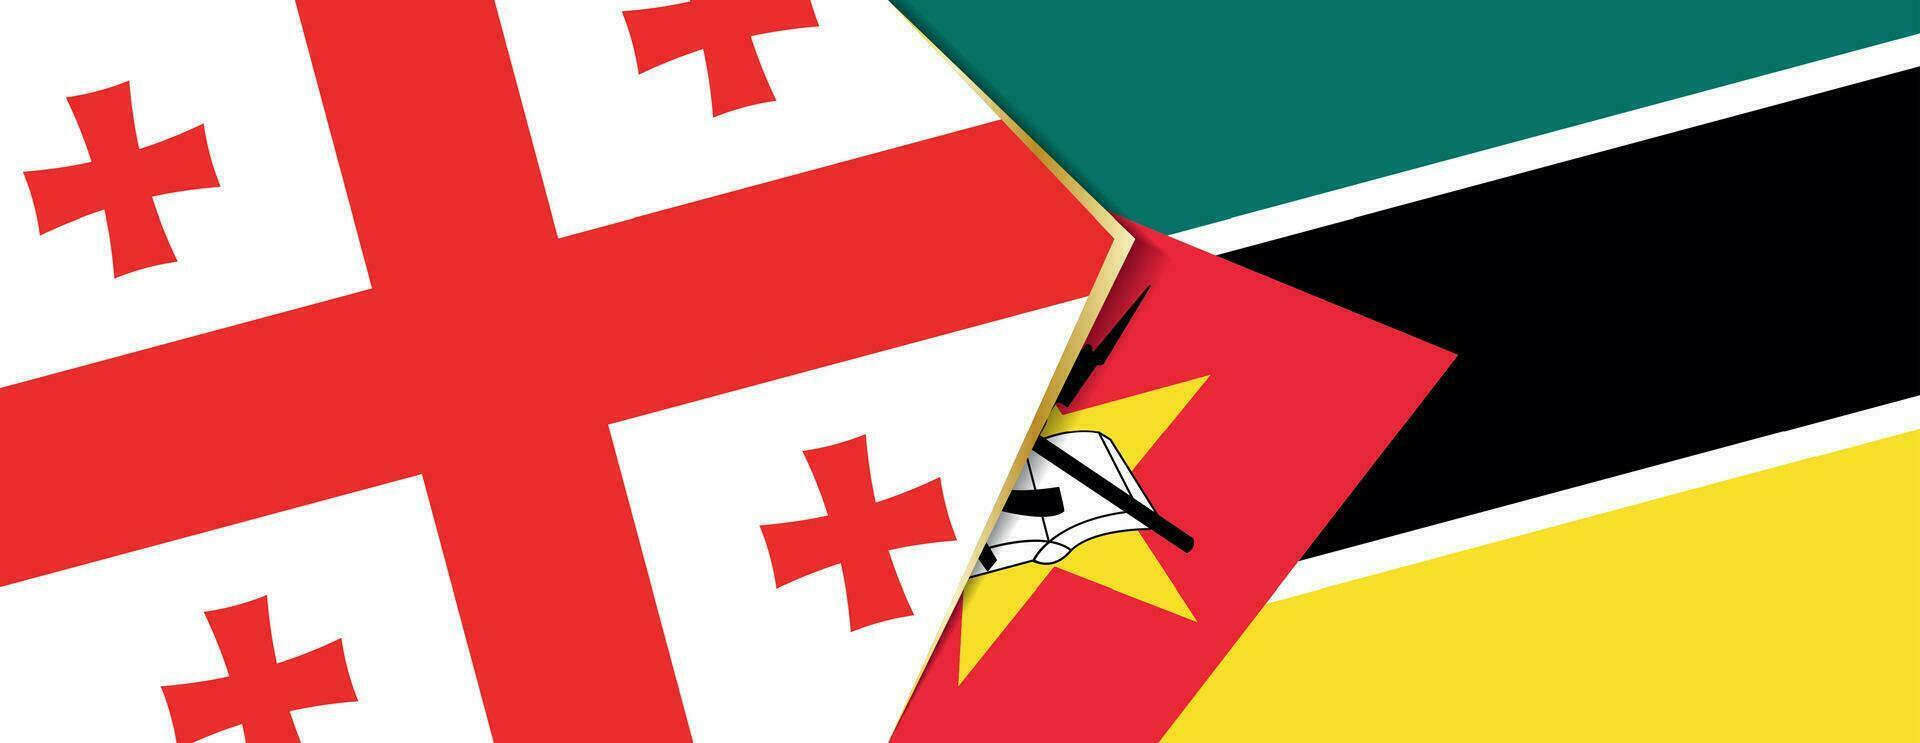 Georgia und Mozambique Flaggen, zwei Vektor Flaggen.